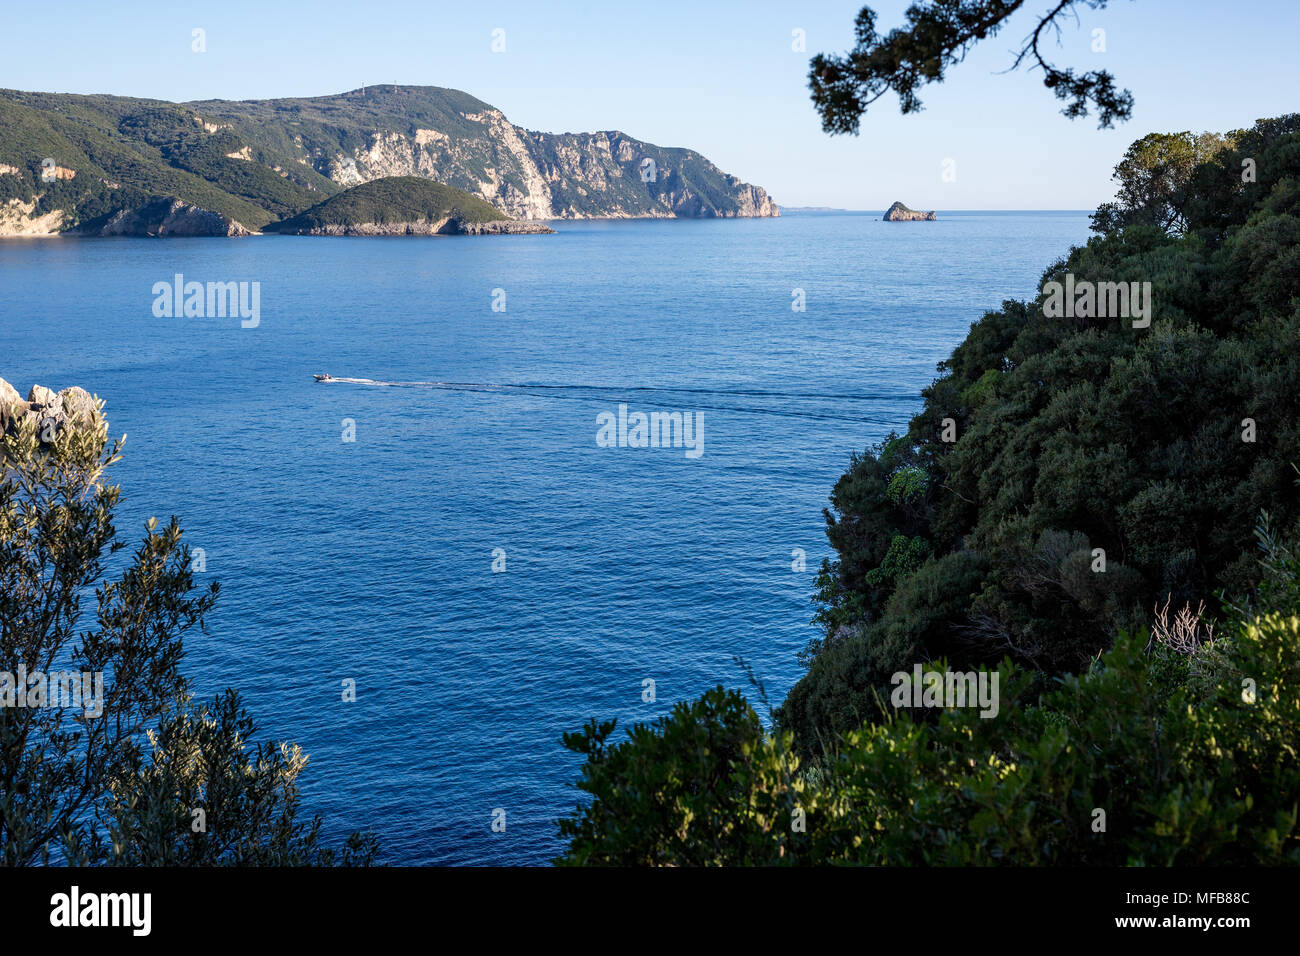 Vistas a un paisaje de mar bahía desde una ubicación elevada en Corfú, Grecia, con aguas azules, verdes montañas, pequeña isla y un barco rápido con dos personas en ella Foto de stock